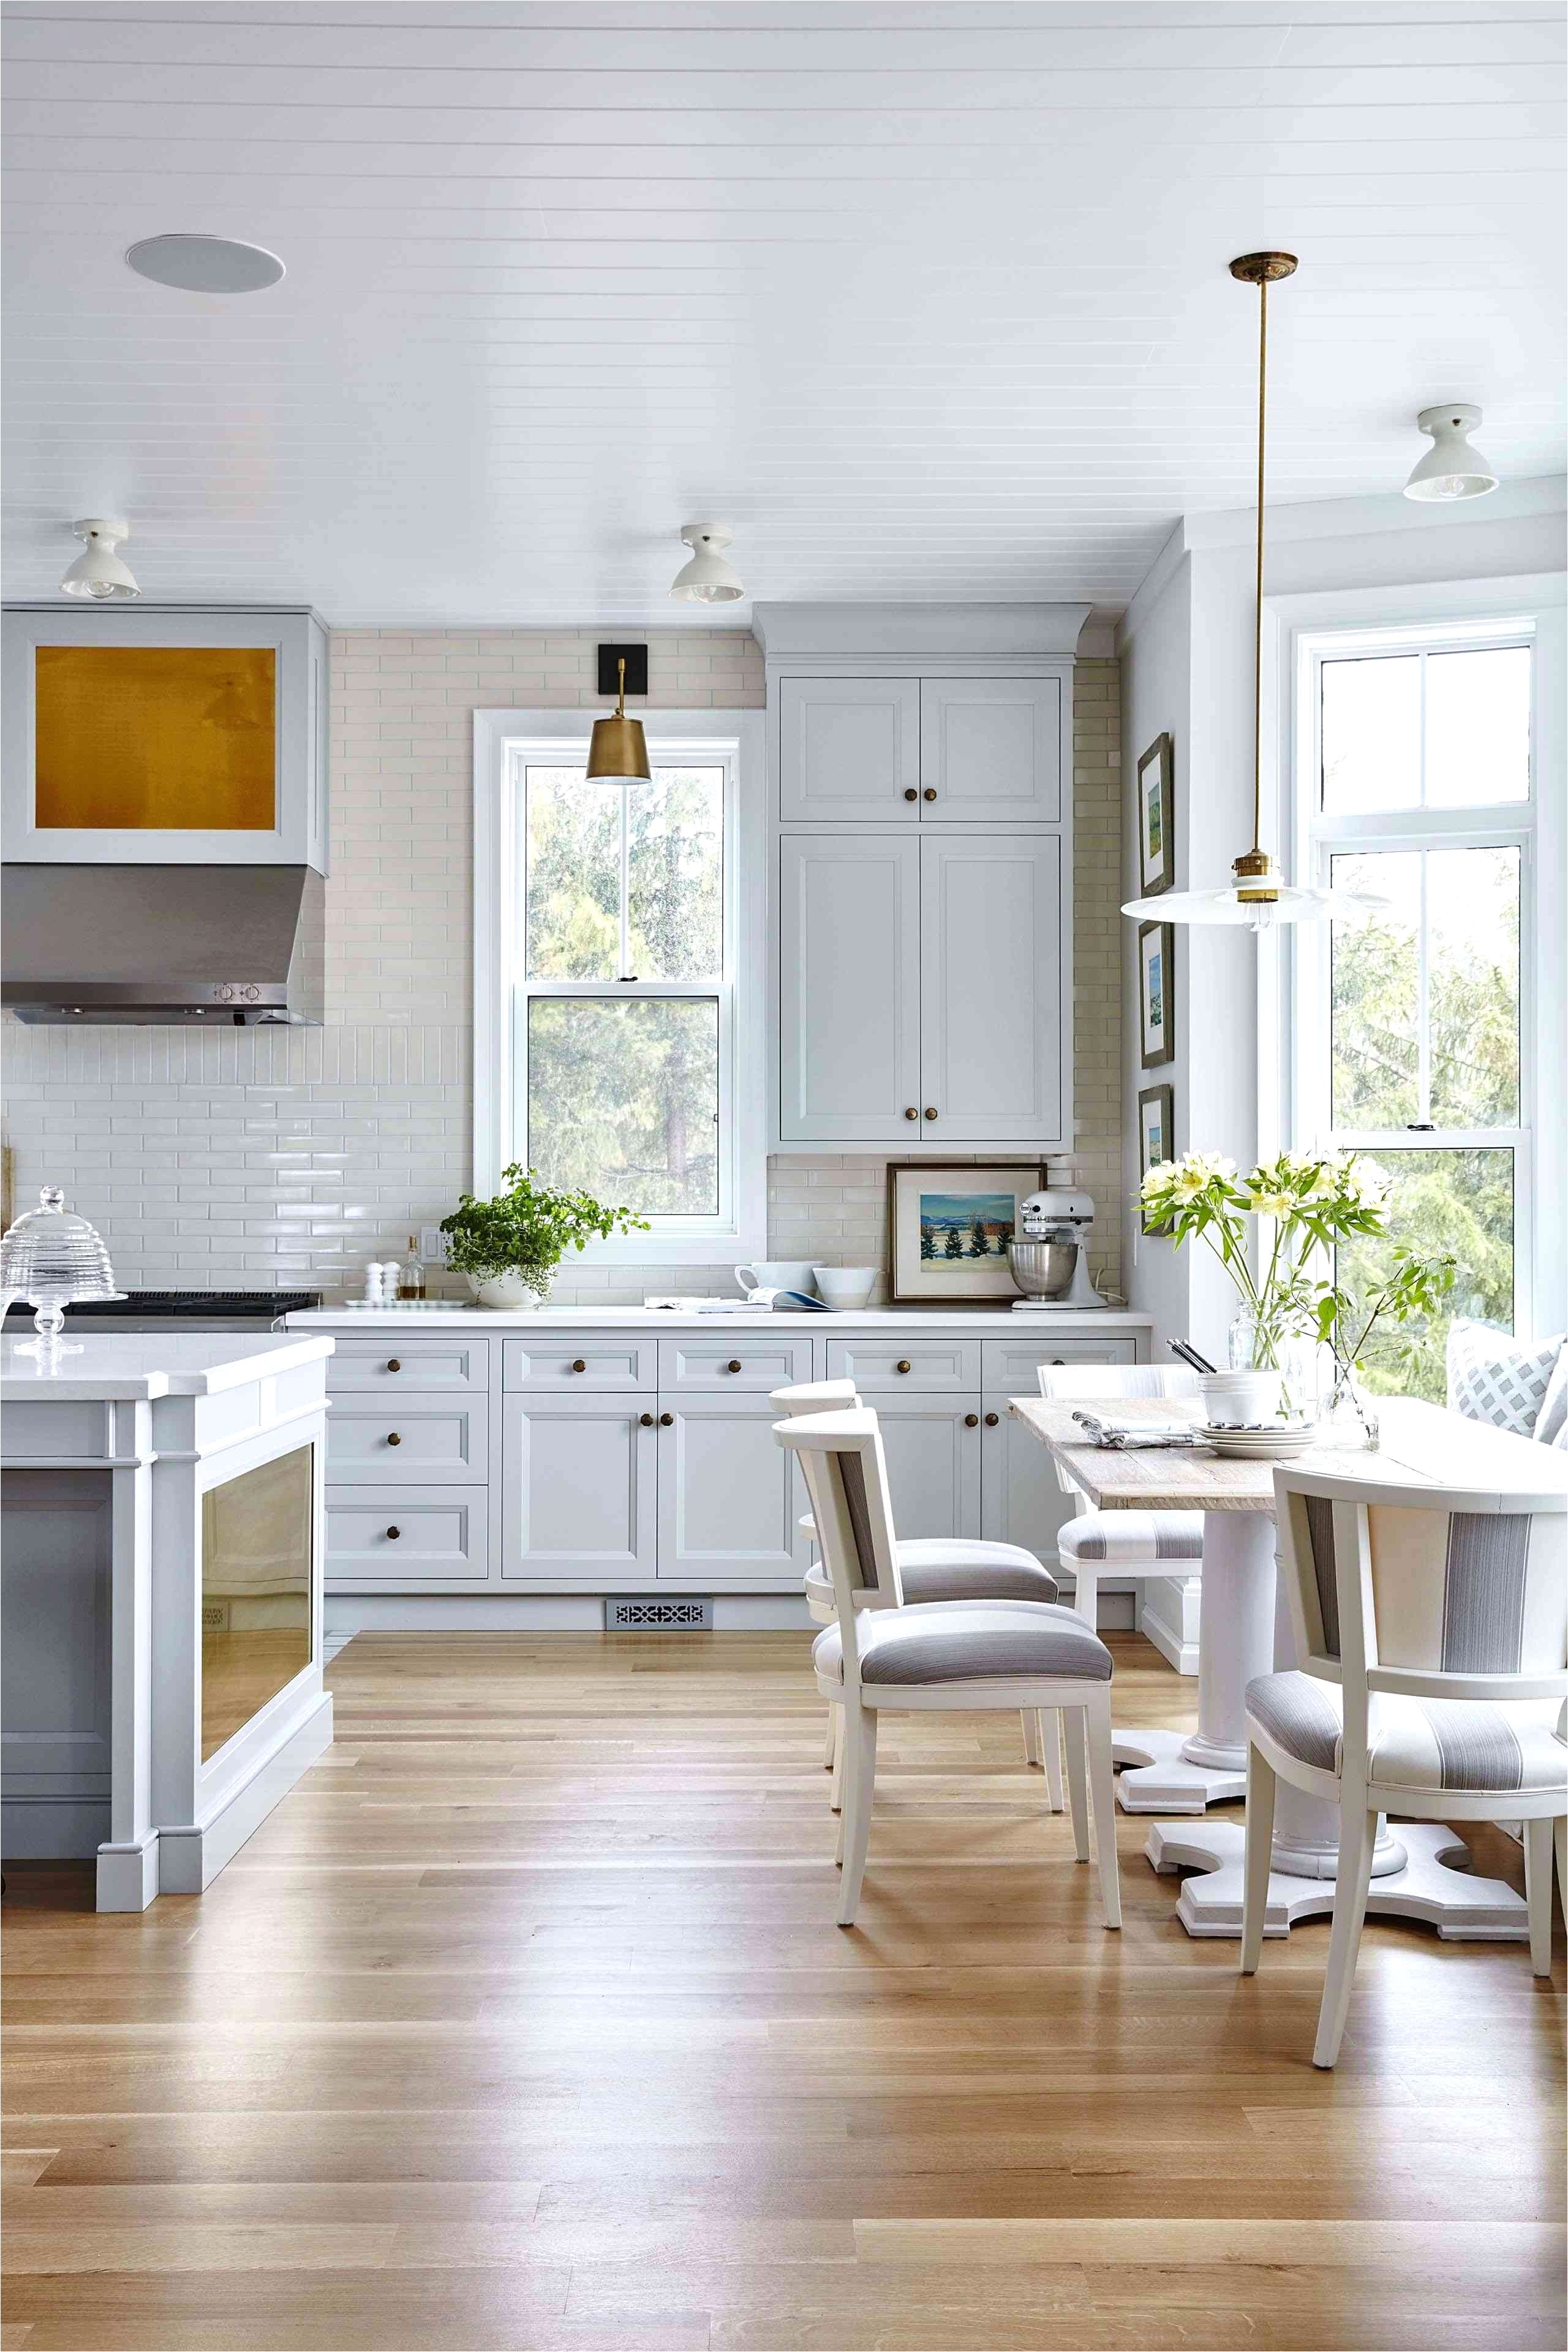 White and Gray Kitchen Cabinets Fresh White Kitchen Design Lovely H Sink Kitchen Vent I 0d